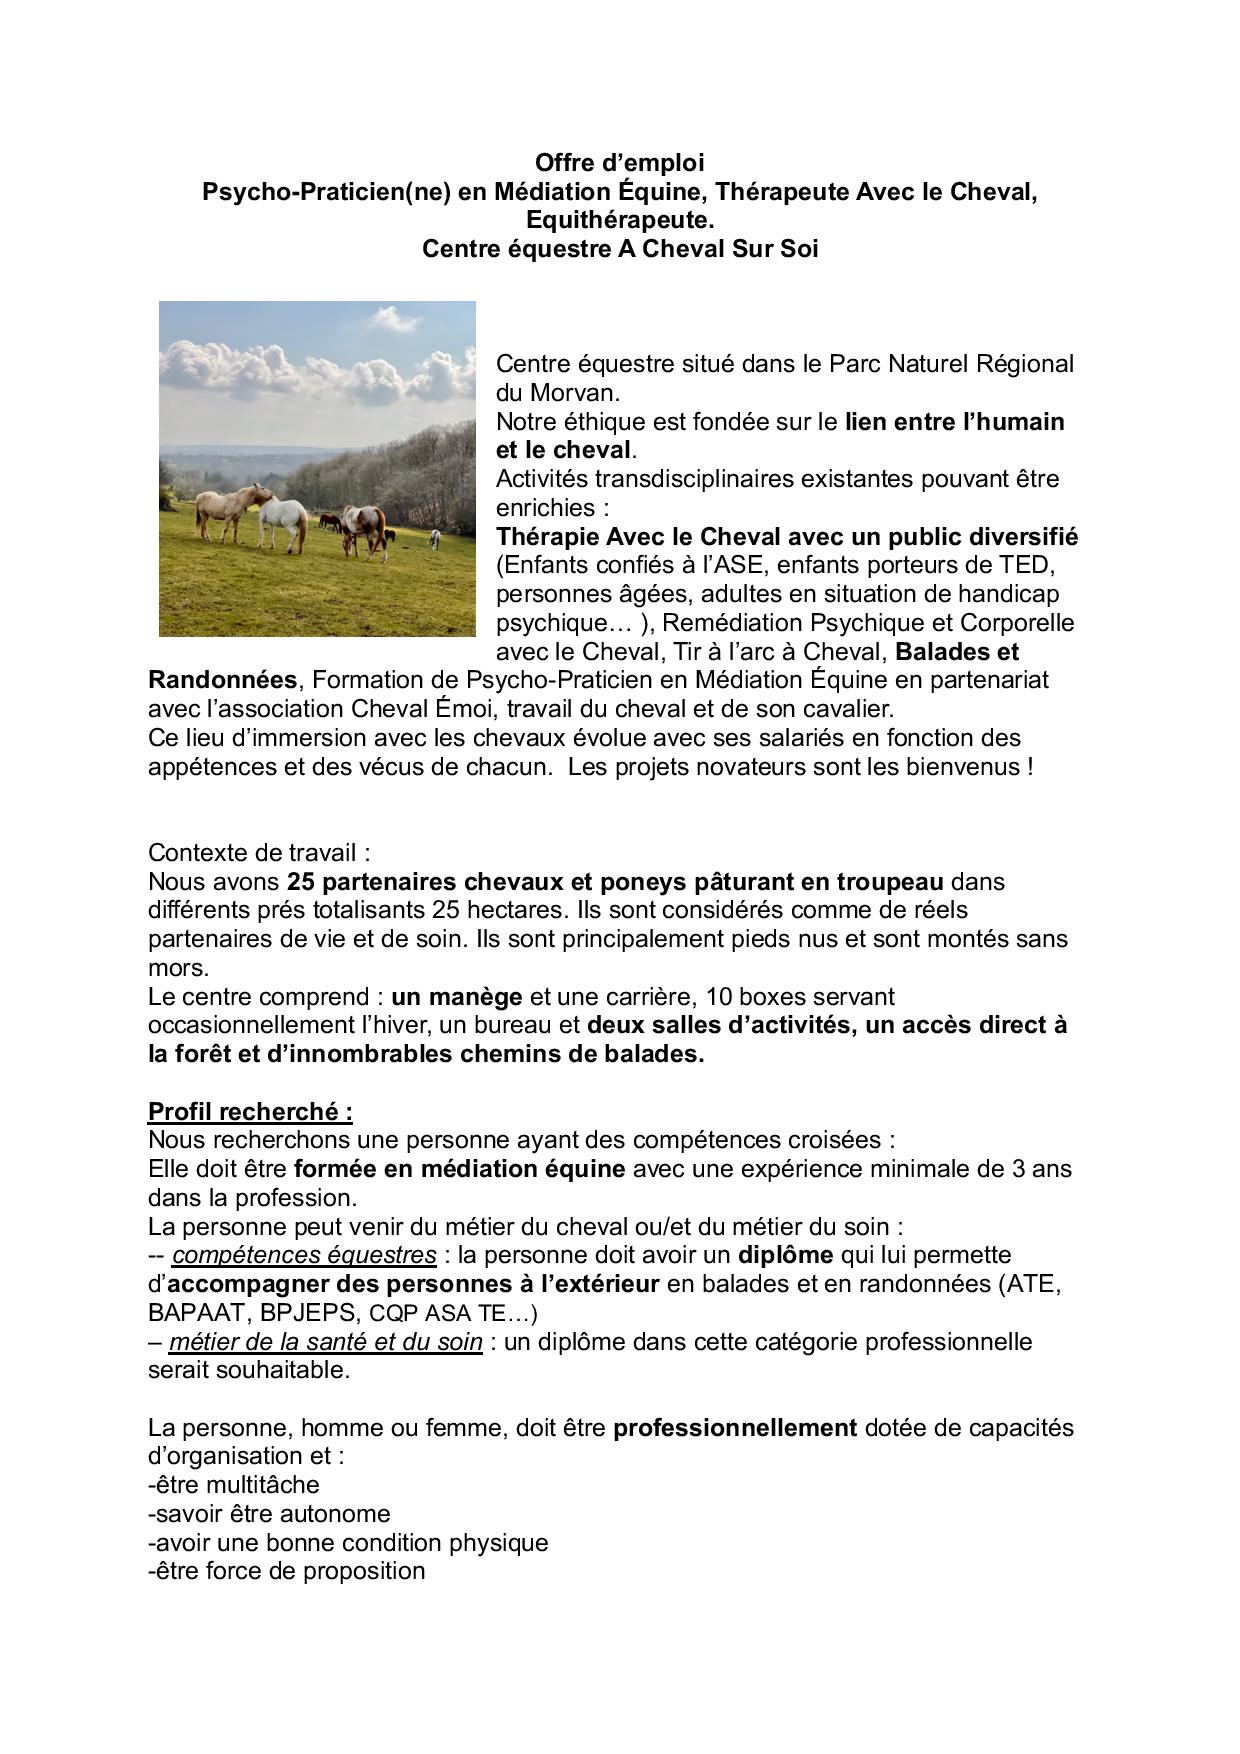 Offre d emploi Praticien(ne) en Médiation Equine A Cheval Sur Soi-page-001